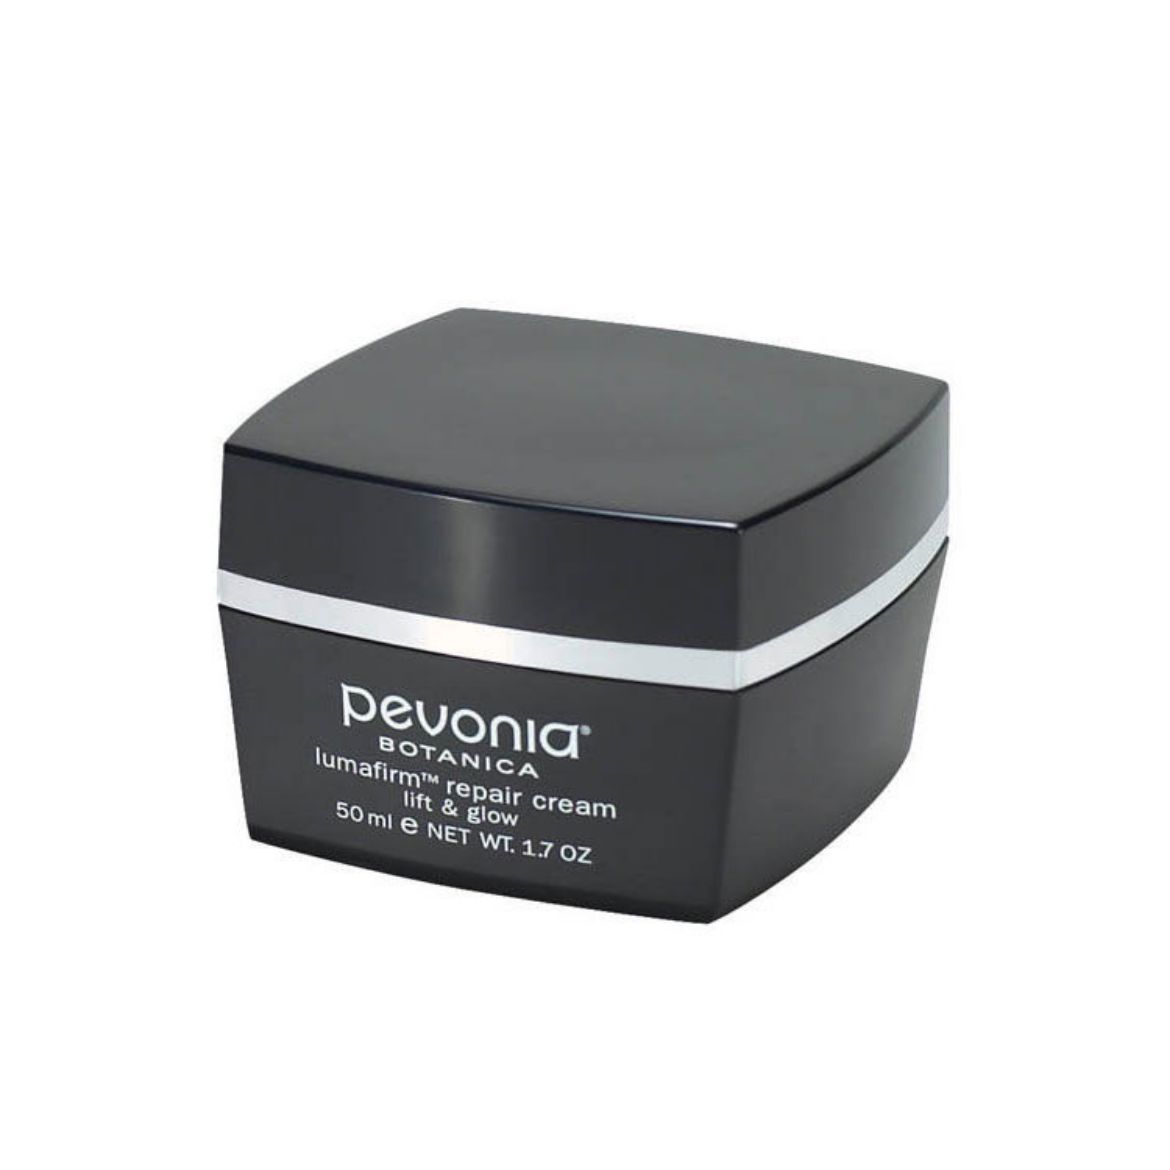 Image of Pevonia Lumafirm Repair Cream Lift & Glow (50ml)